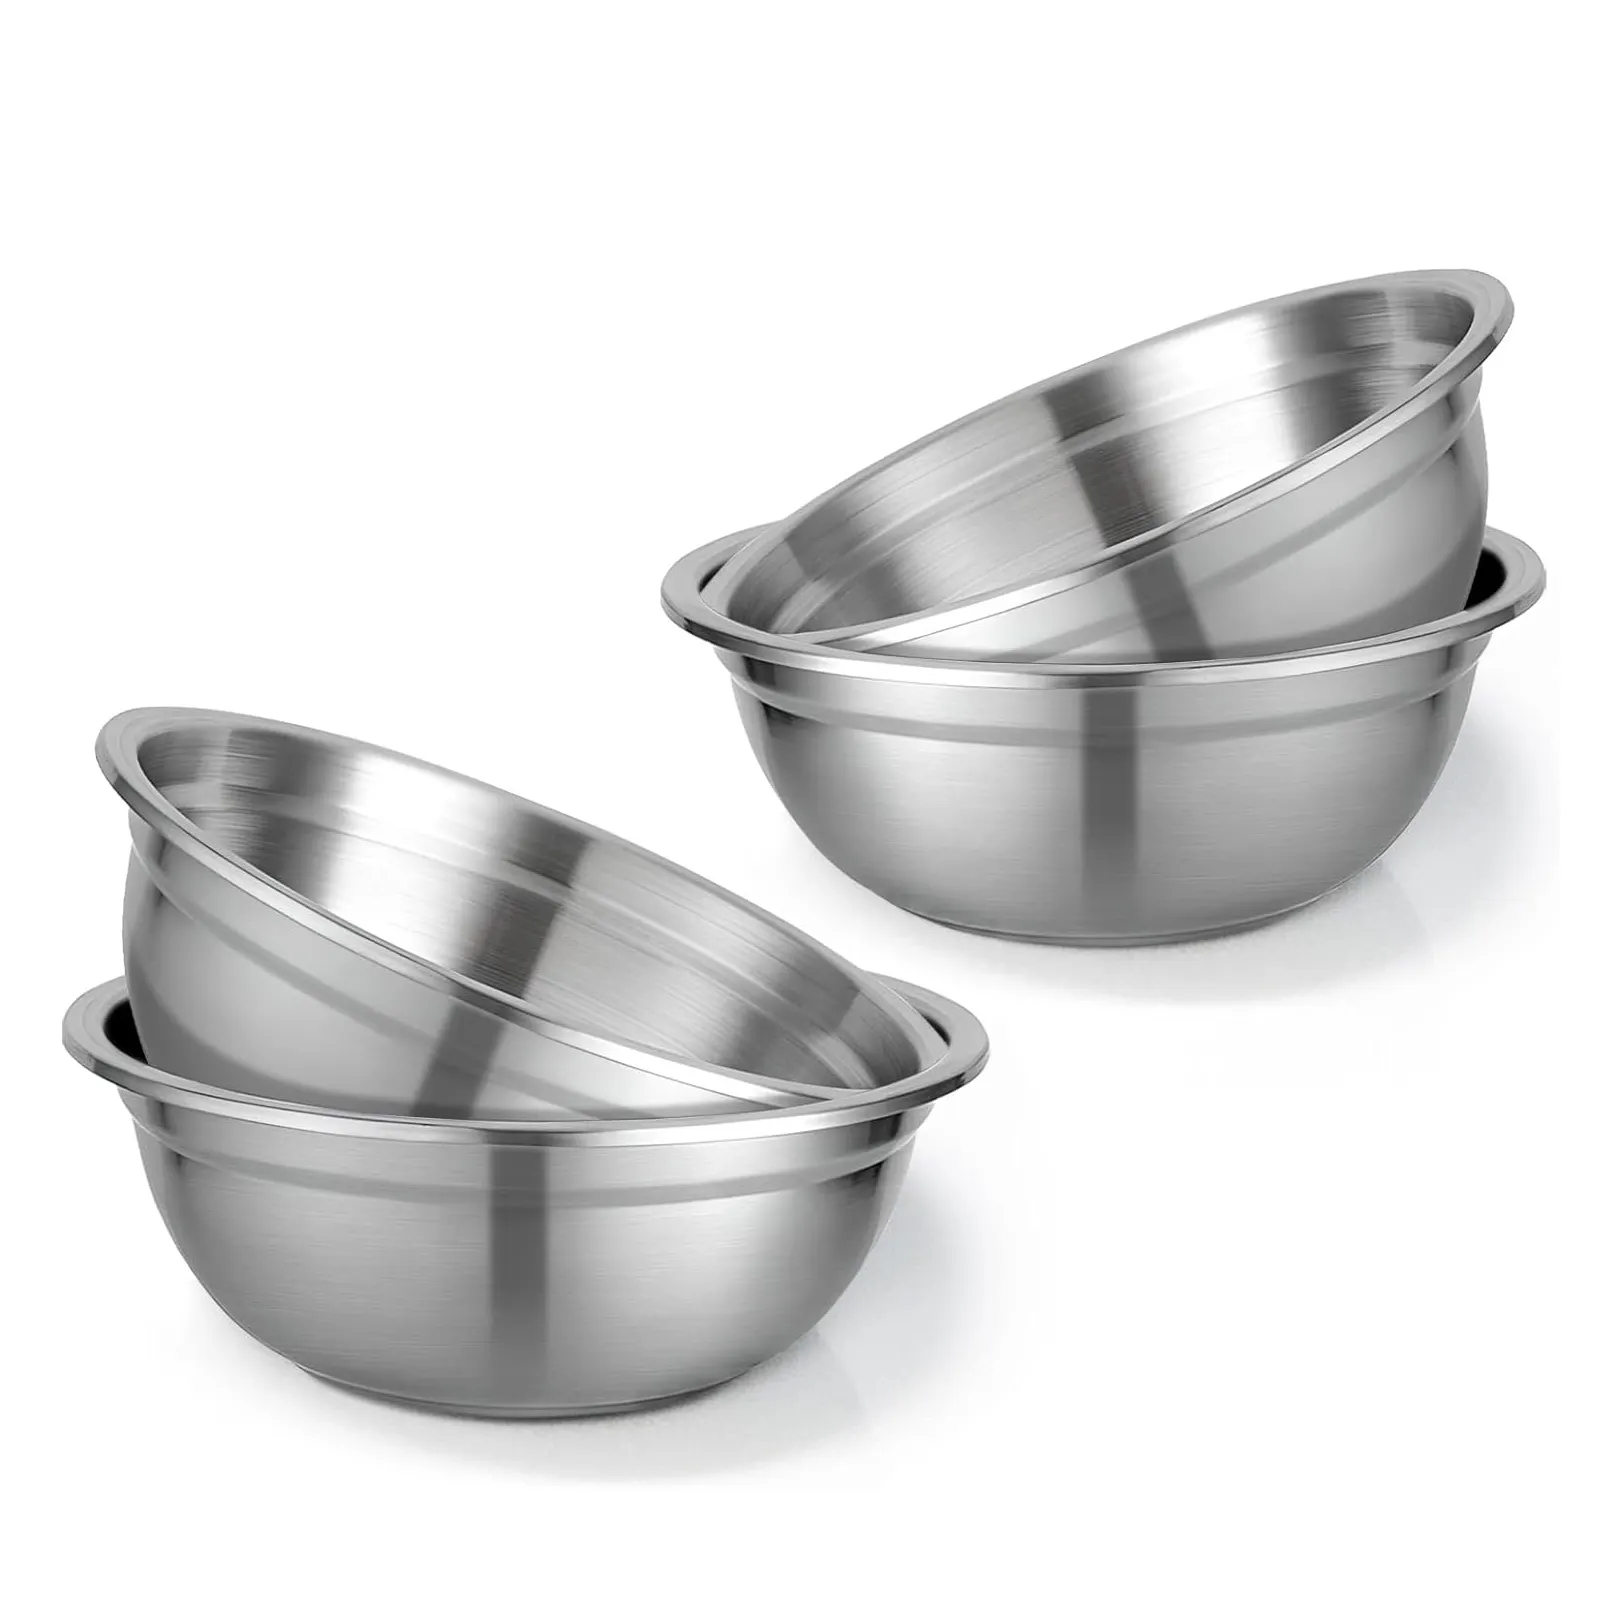 Tragbare Küchen utensilien Geschirr Metall Schüssel Set Stapelbare Rühr schüssel Edelstahl Servier suppe Bogen